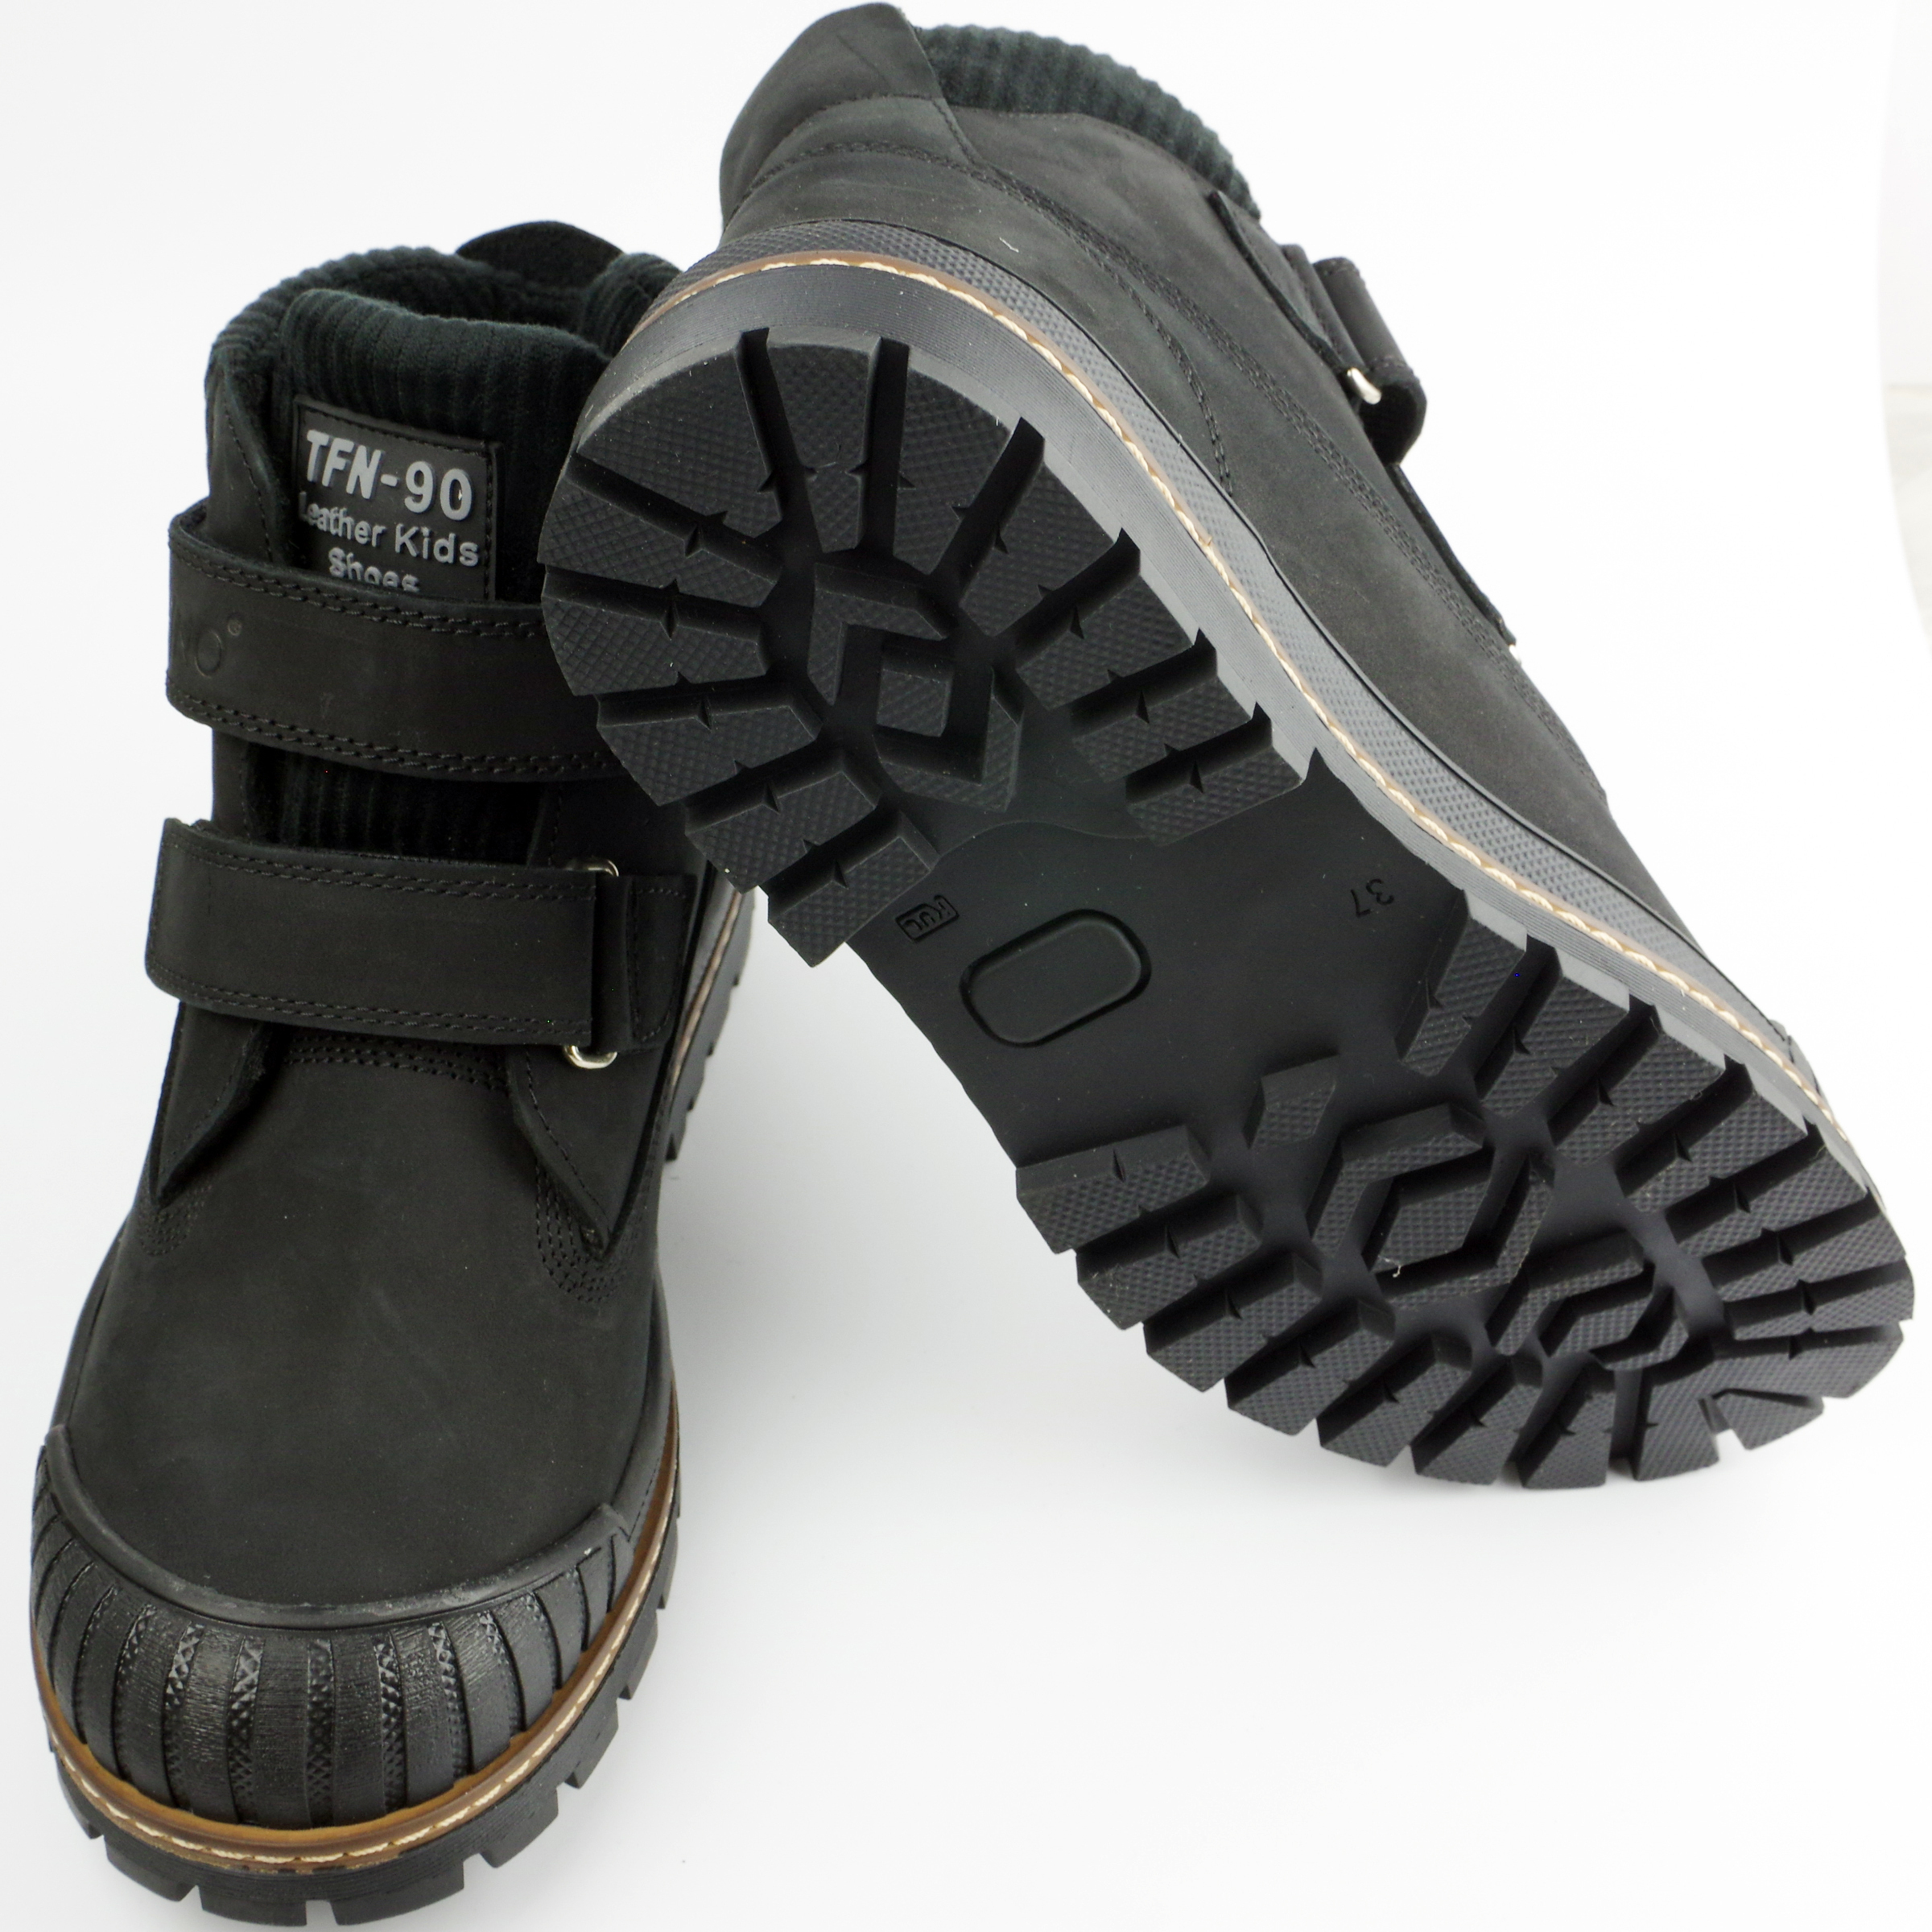 Ботинки подростковые (2142) материал Нубук, цвет Черный  для мальчиков 37-40 размеры – Sole Kids. Фото 3